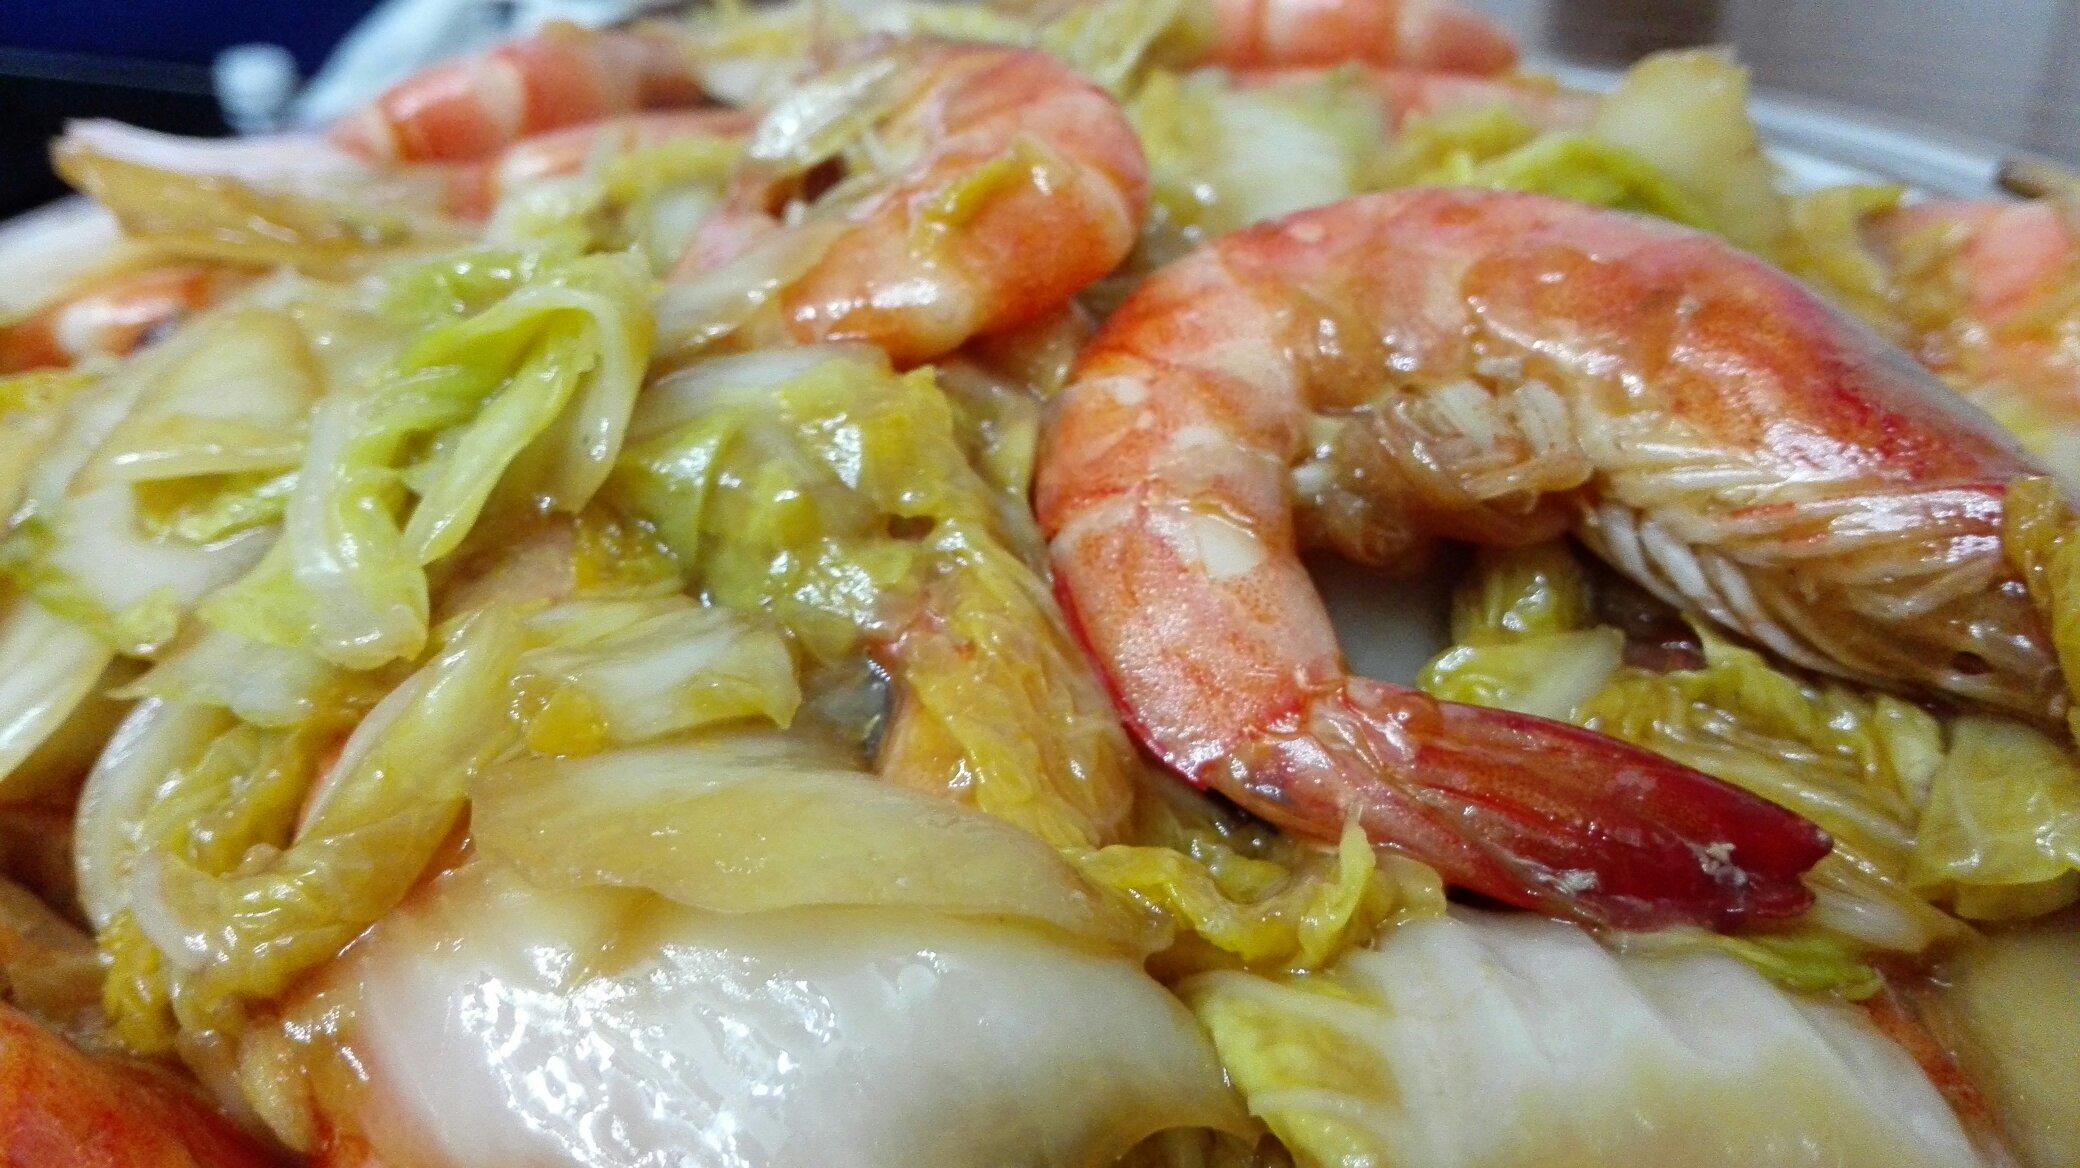 大虾烩白菜